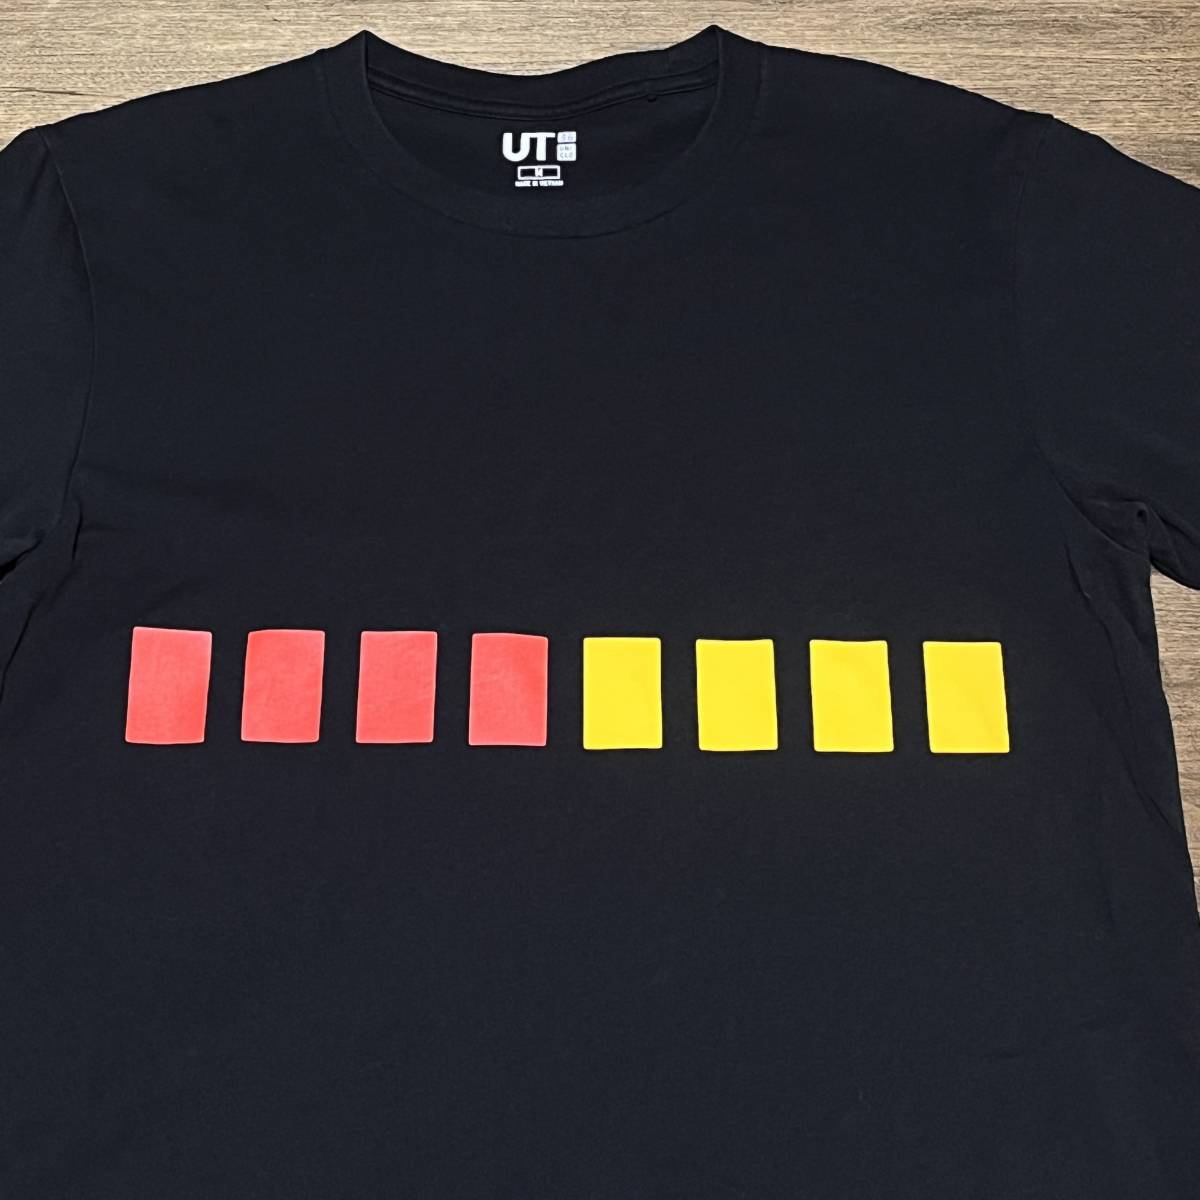 ◎ (ユニクロ) ローランド・TR-808 Tシャツ UT Roland TR-808 T-shirt M_画像3